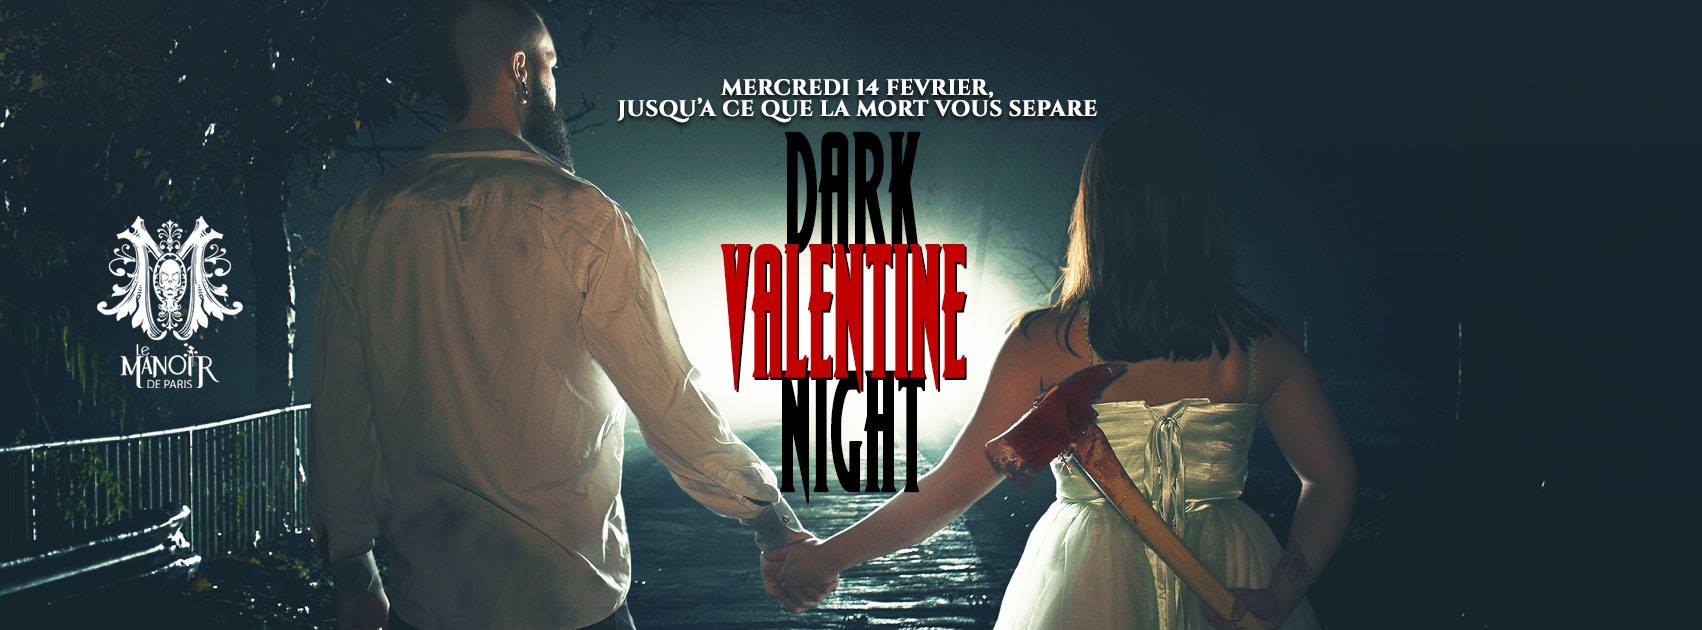 Dark Valentine Night au Manoir de Paris